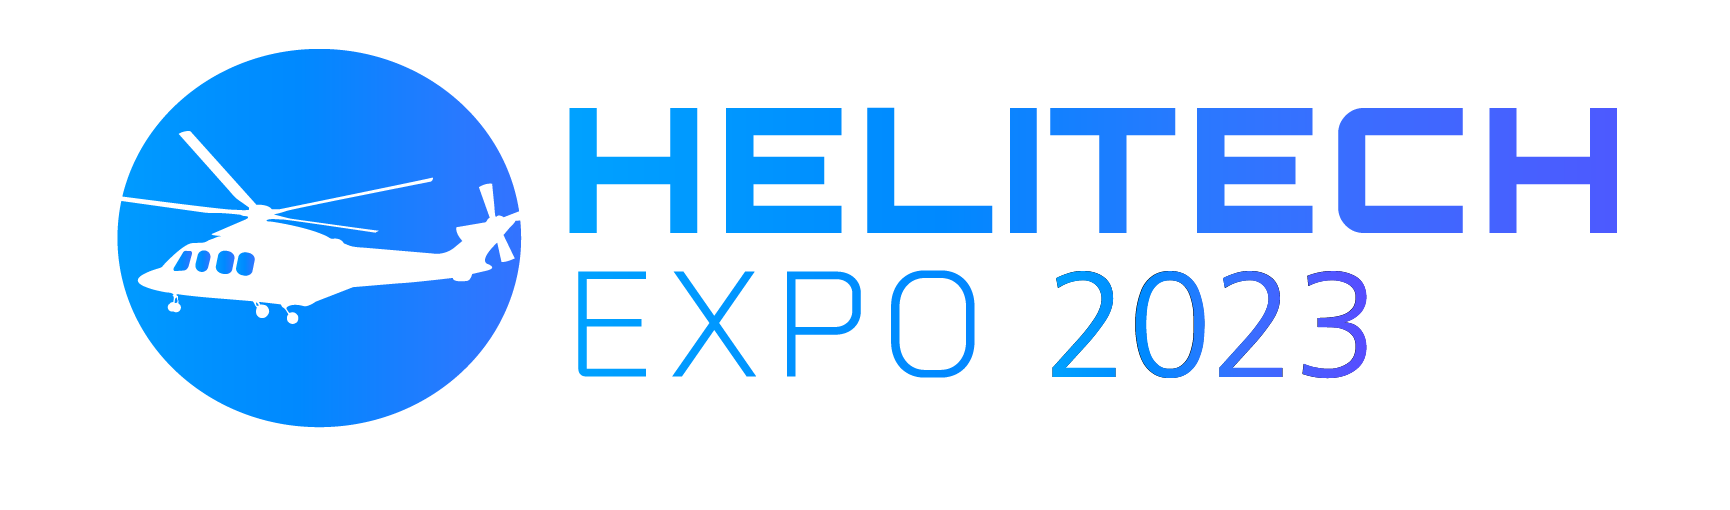 Helitech World Expo